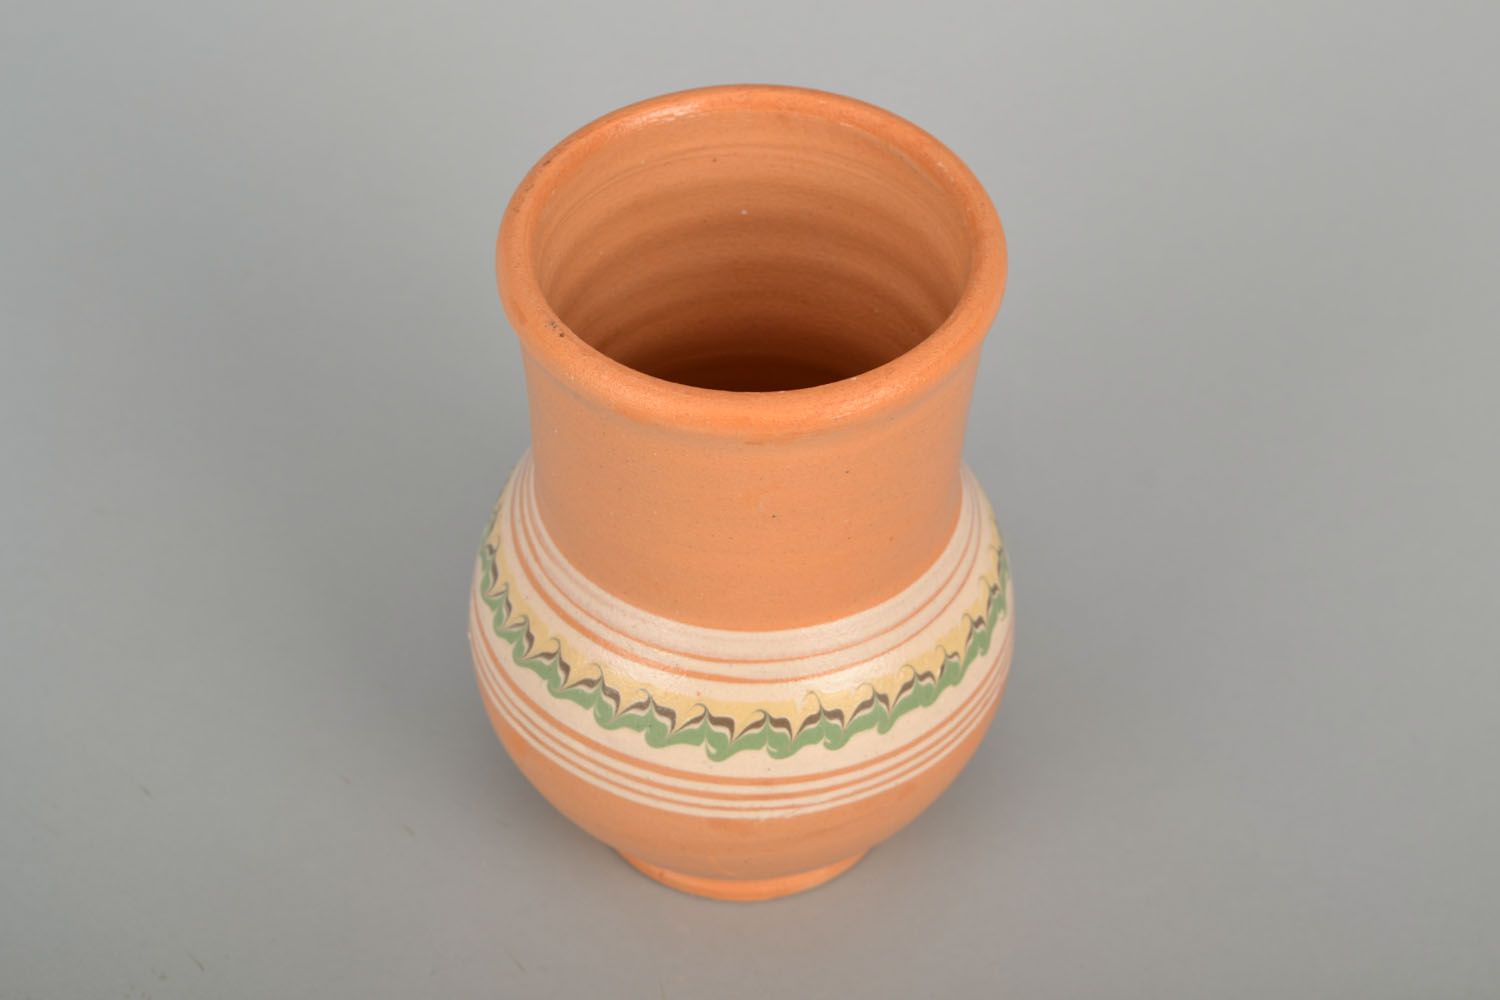 30 oz ceramic milk jug in classic style 0,9 lb photo 4